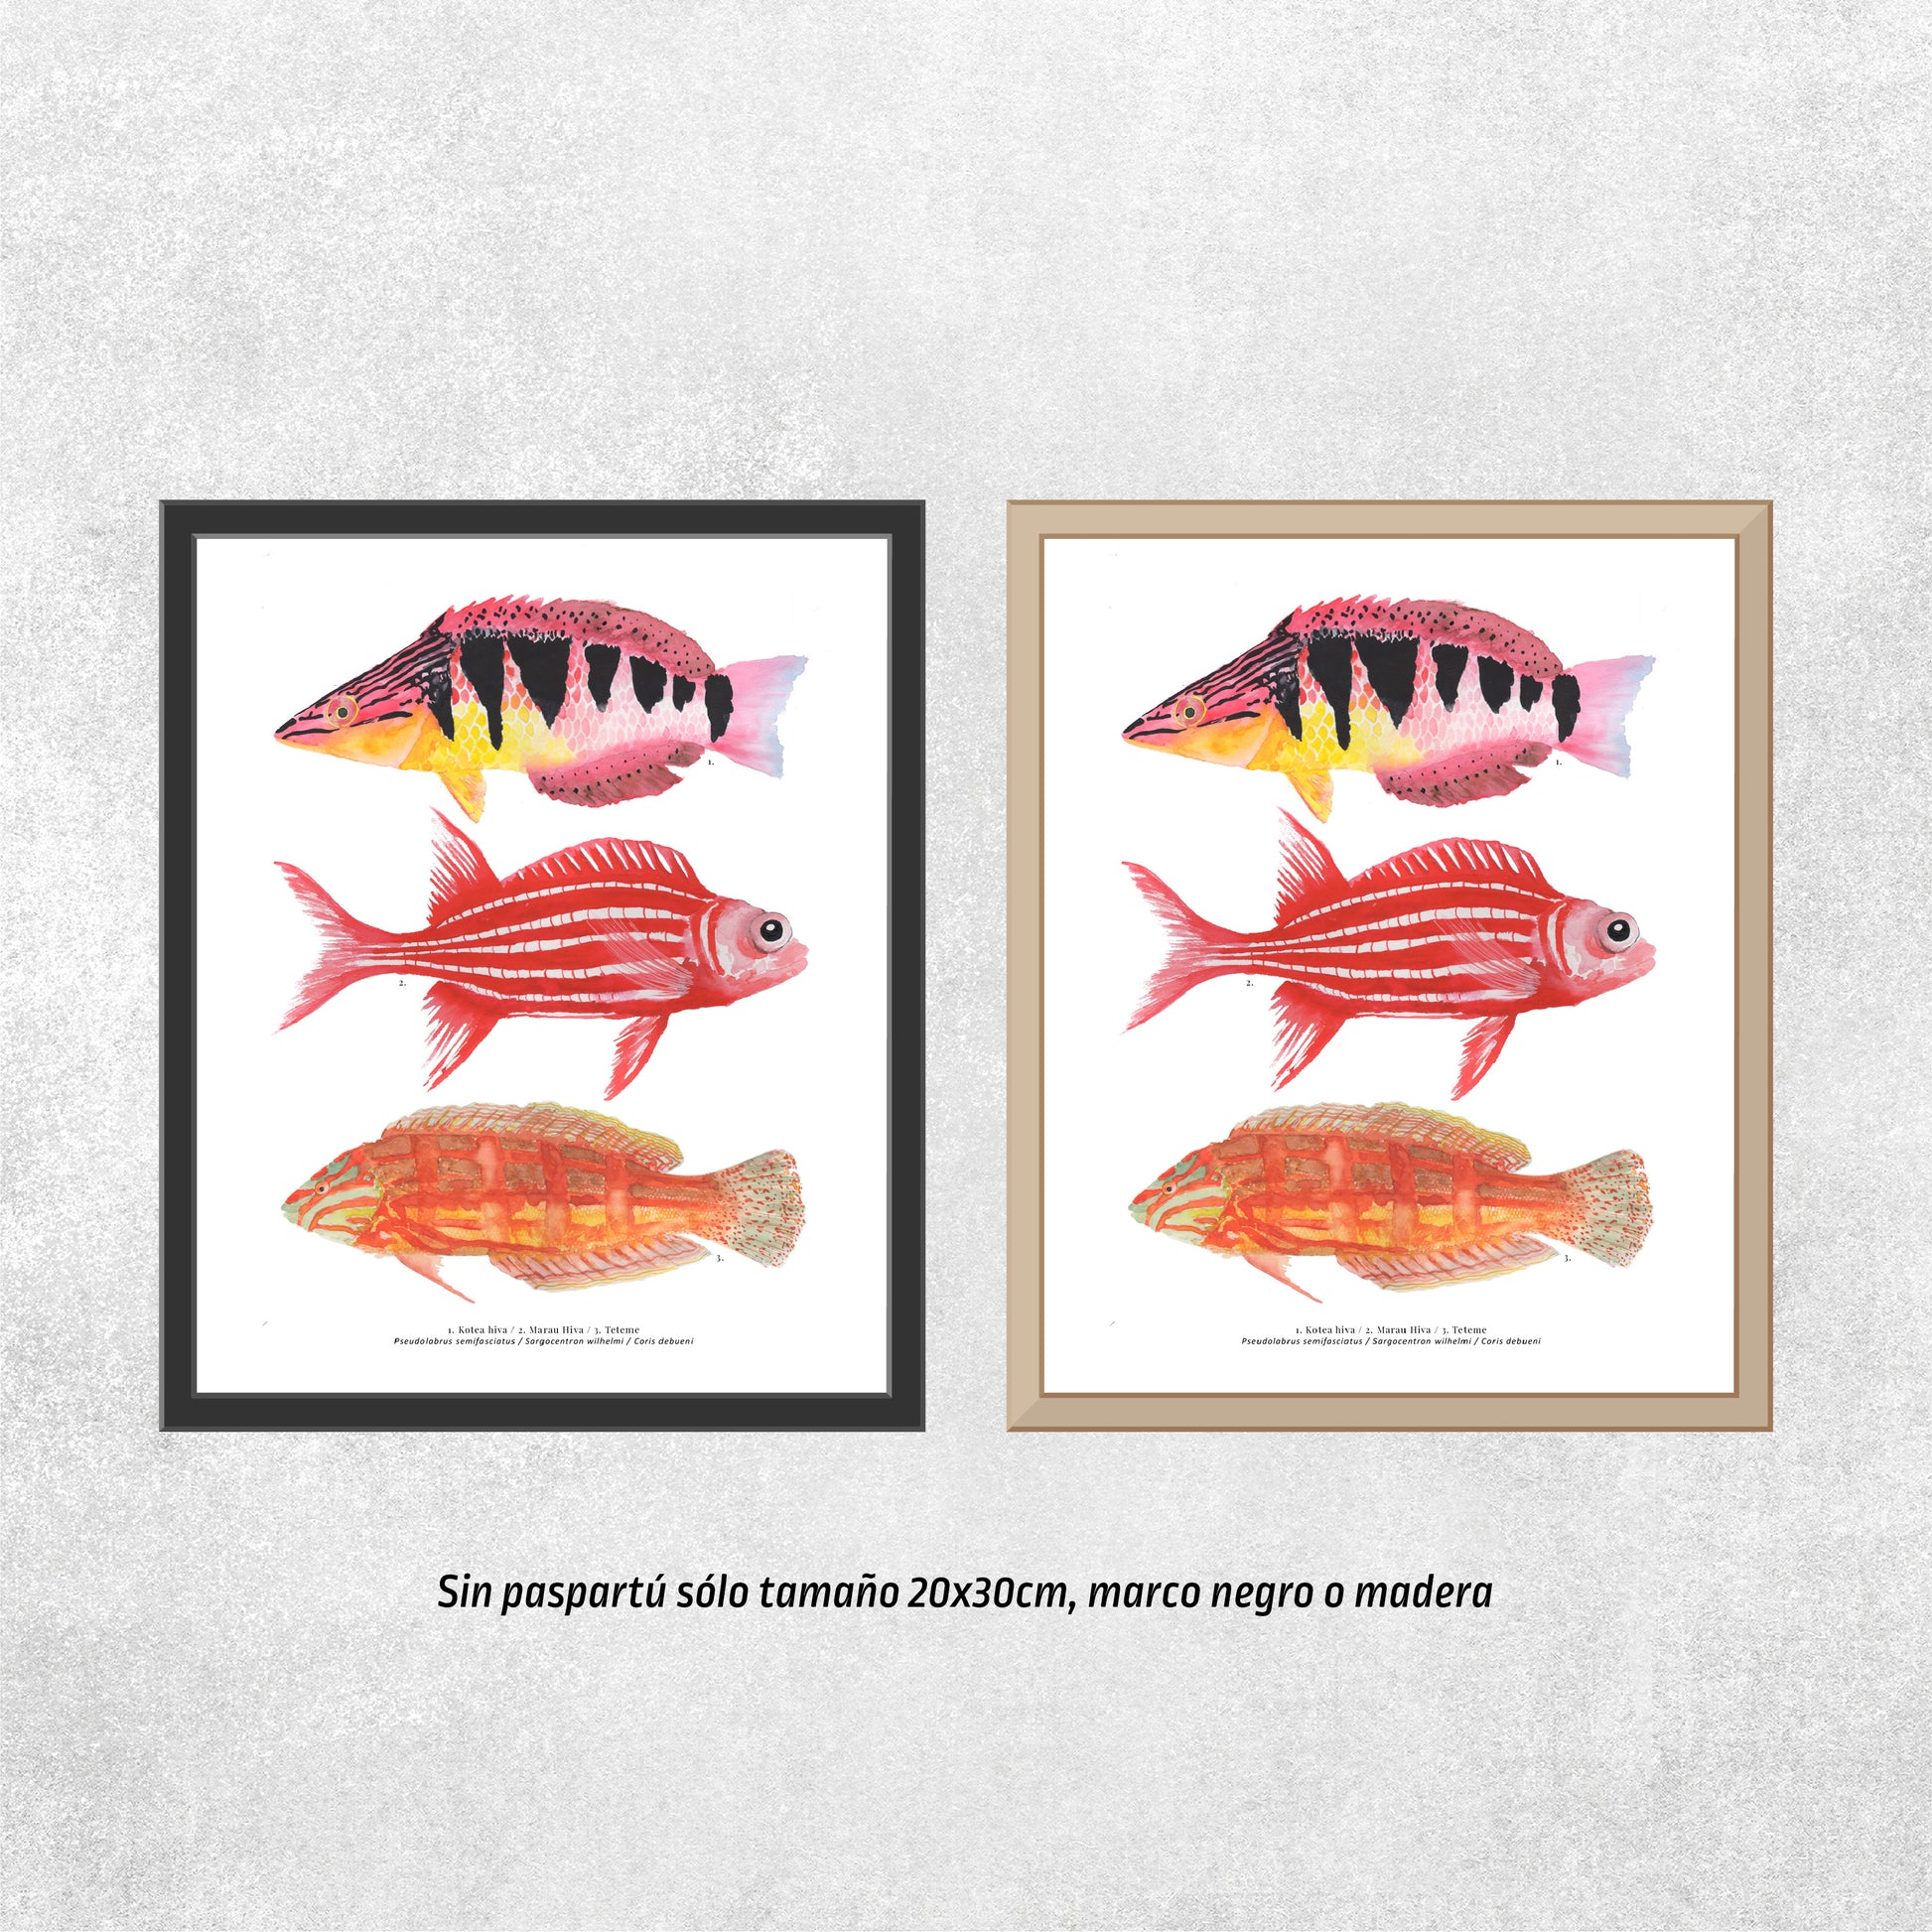 Reproducción de una ilustración en acuarela de 3 peces coloridos, pez Kotea hiva, pez marau hiva, pez teteme, con marco de madera y marco negro.